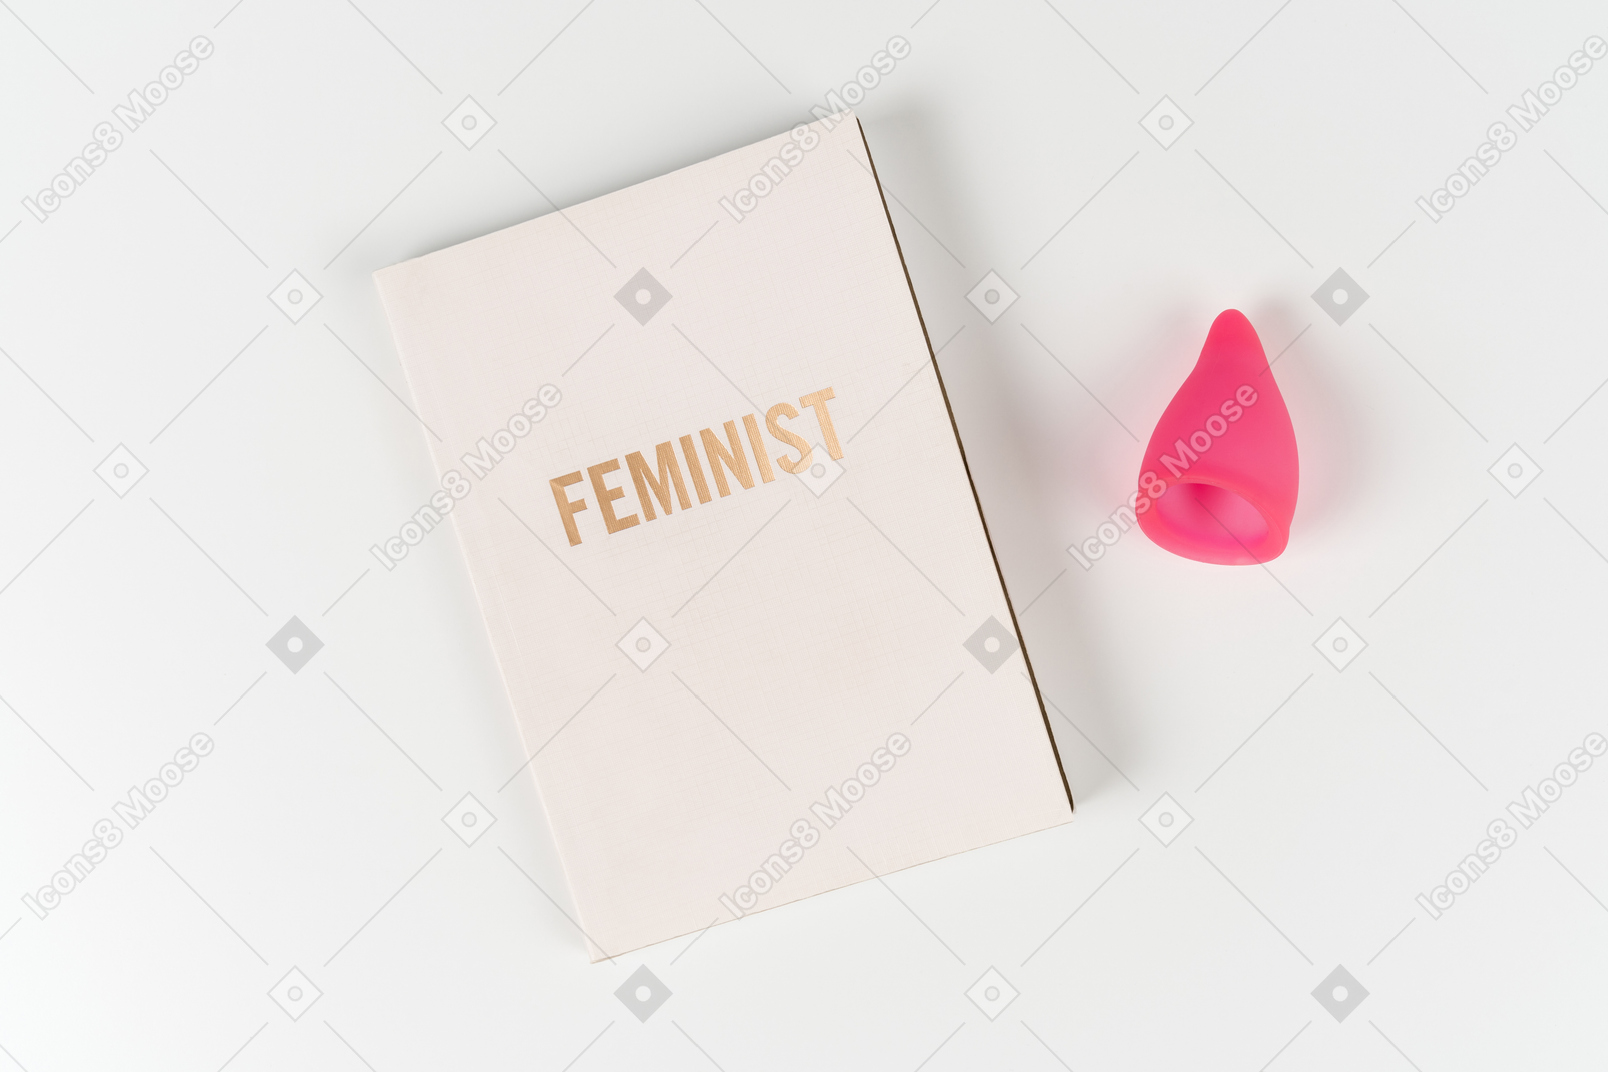 フェミニストの本と白い背景の月経カップ